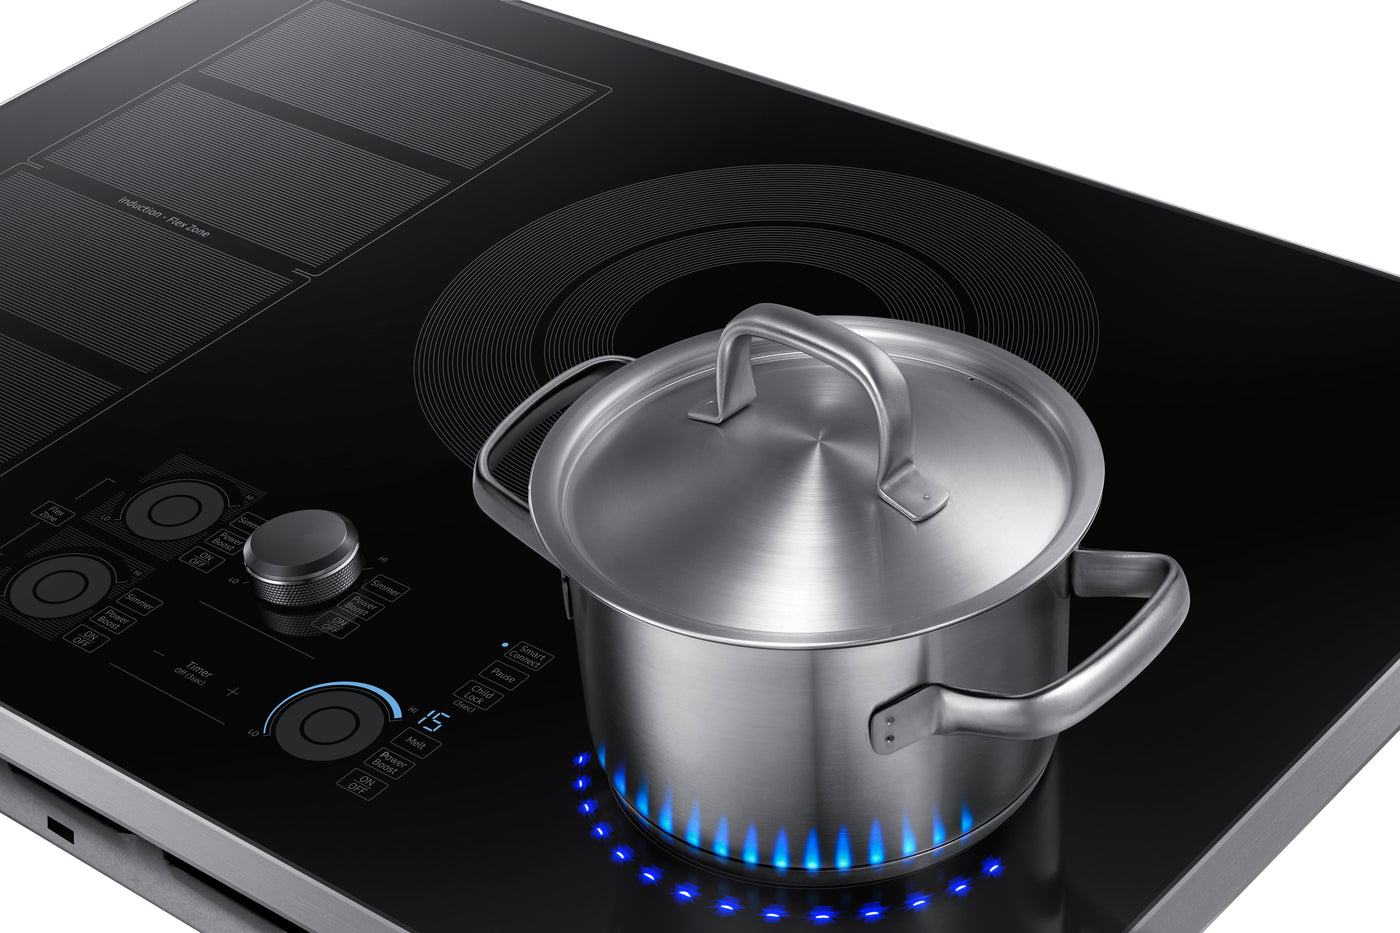 Surface de cuisson à induction Samsung, technologie de flamme